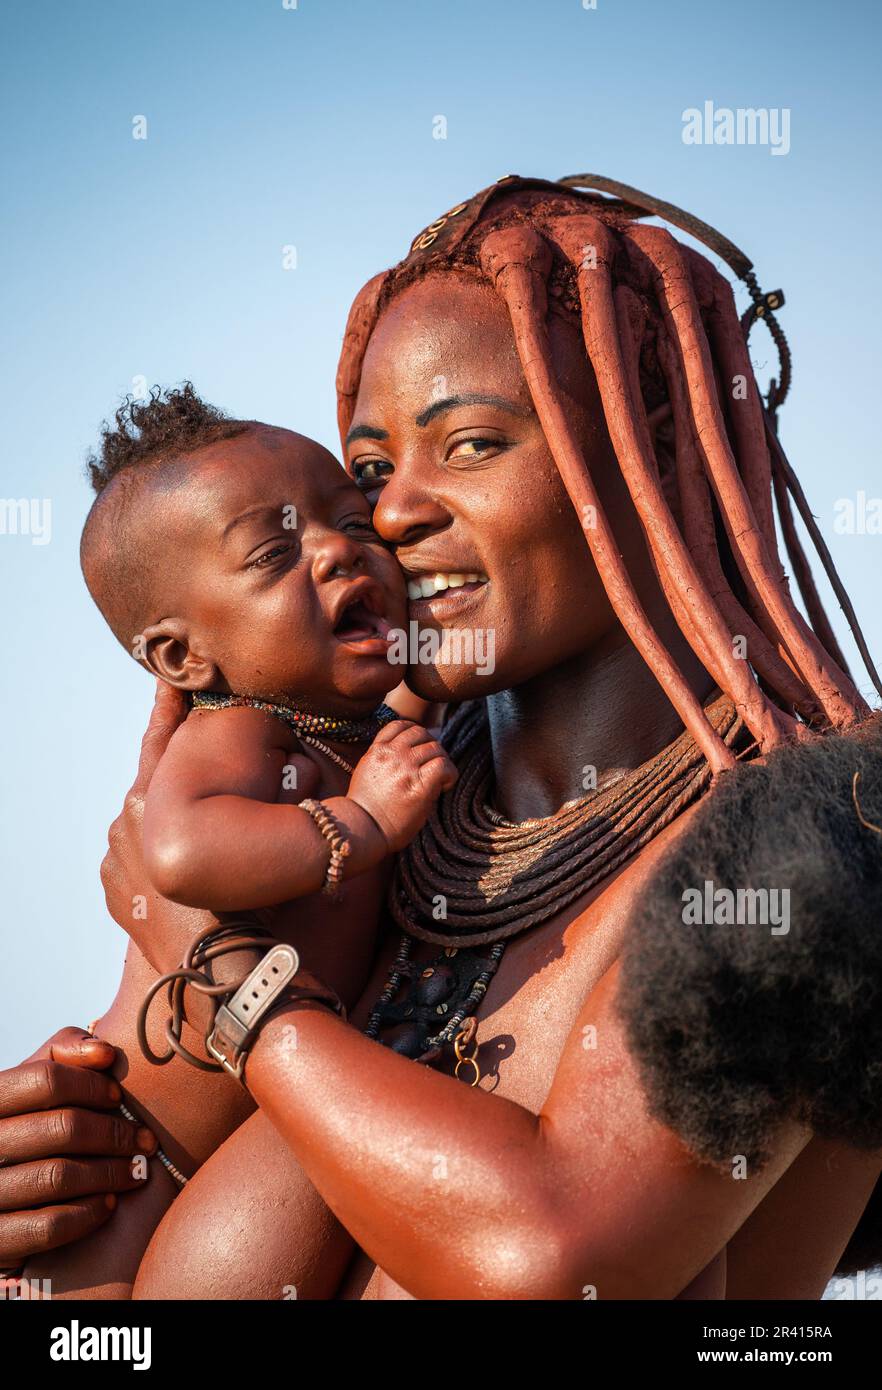 Porträt einer jungen Frau des Himba-Stammes mit einem kleinen Kind in ihren Armen. Stockfoto